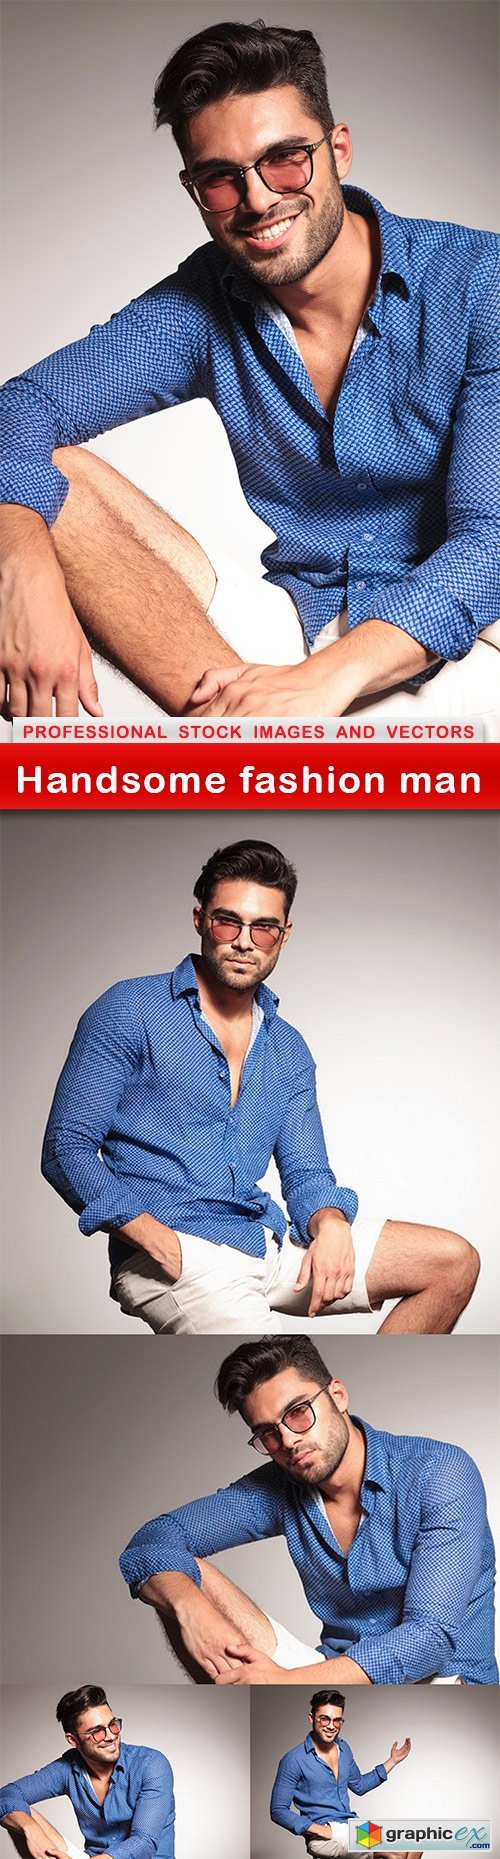 Handsome fashion man - 5 UHQ JPEG